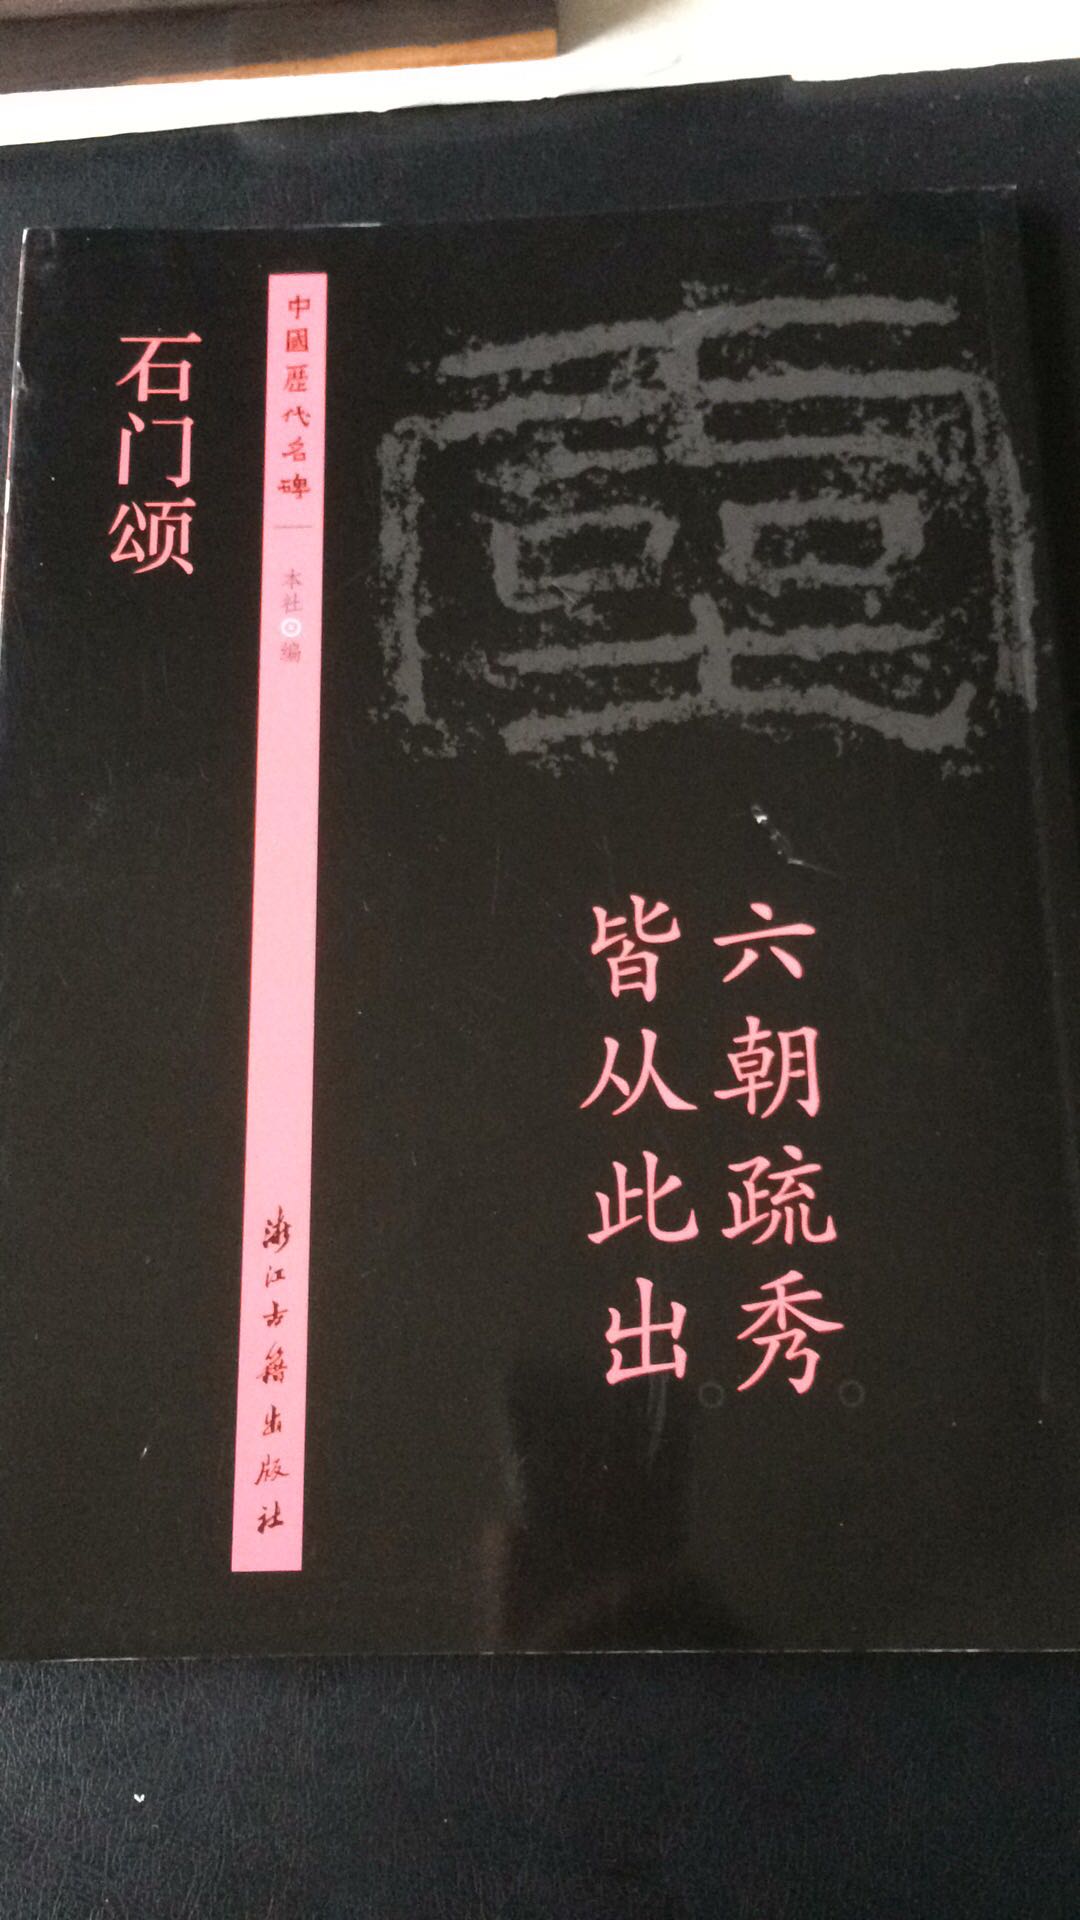 中国历代名碑碑学原版拓印刷本，专业出版社出版发行质量可靠，注解清晰详尽便于理解学习。商城购物方便快捷，无优惠活动。